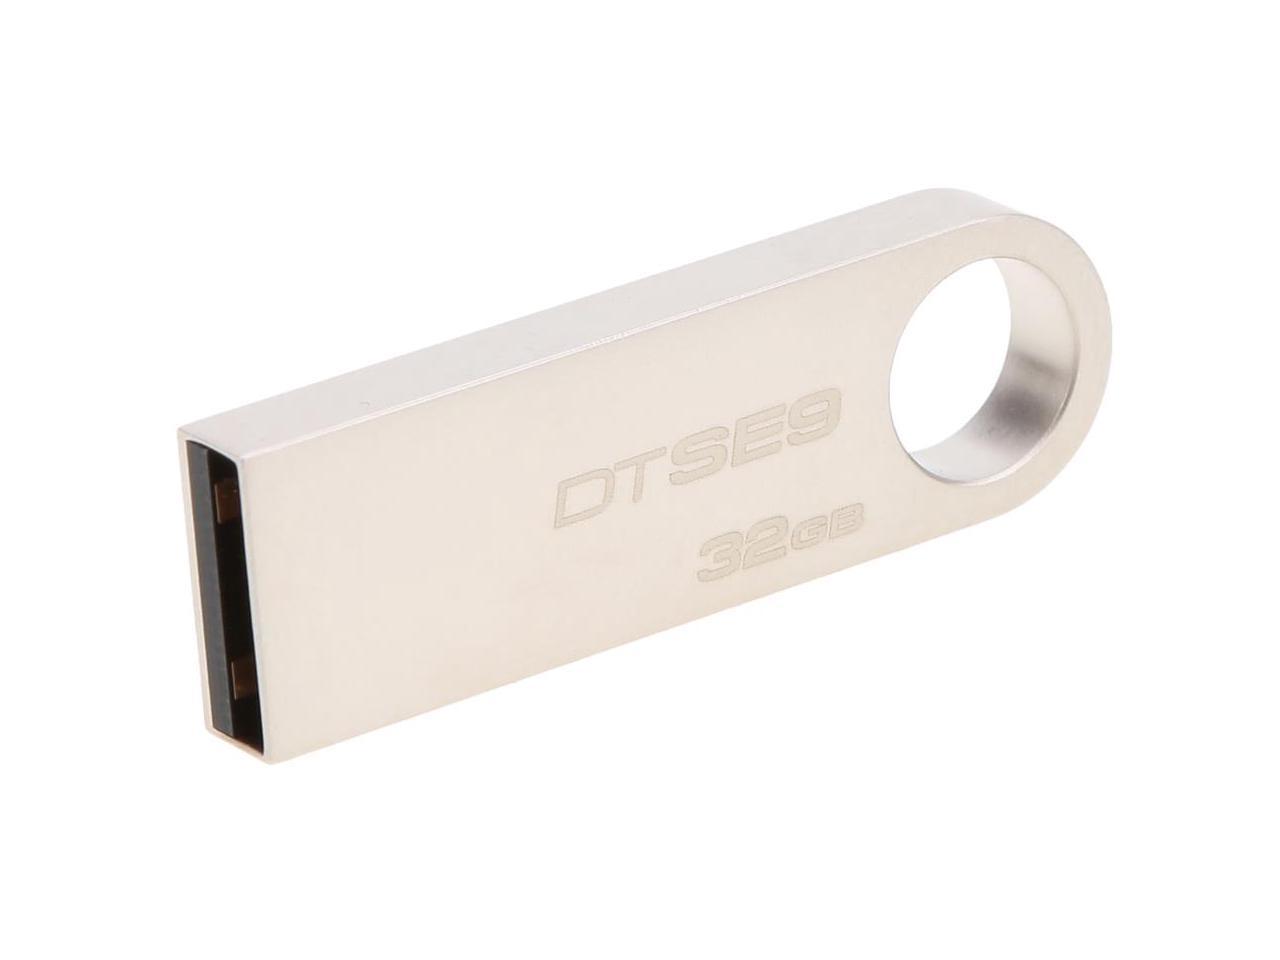 Kingston Mini Key DTSE9 Usb Flash Drive 2.0 8gb 16gb 32gb Memory USB Stick 